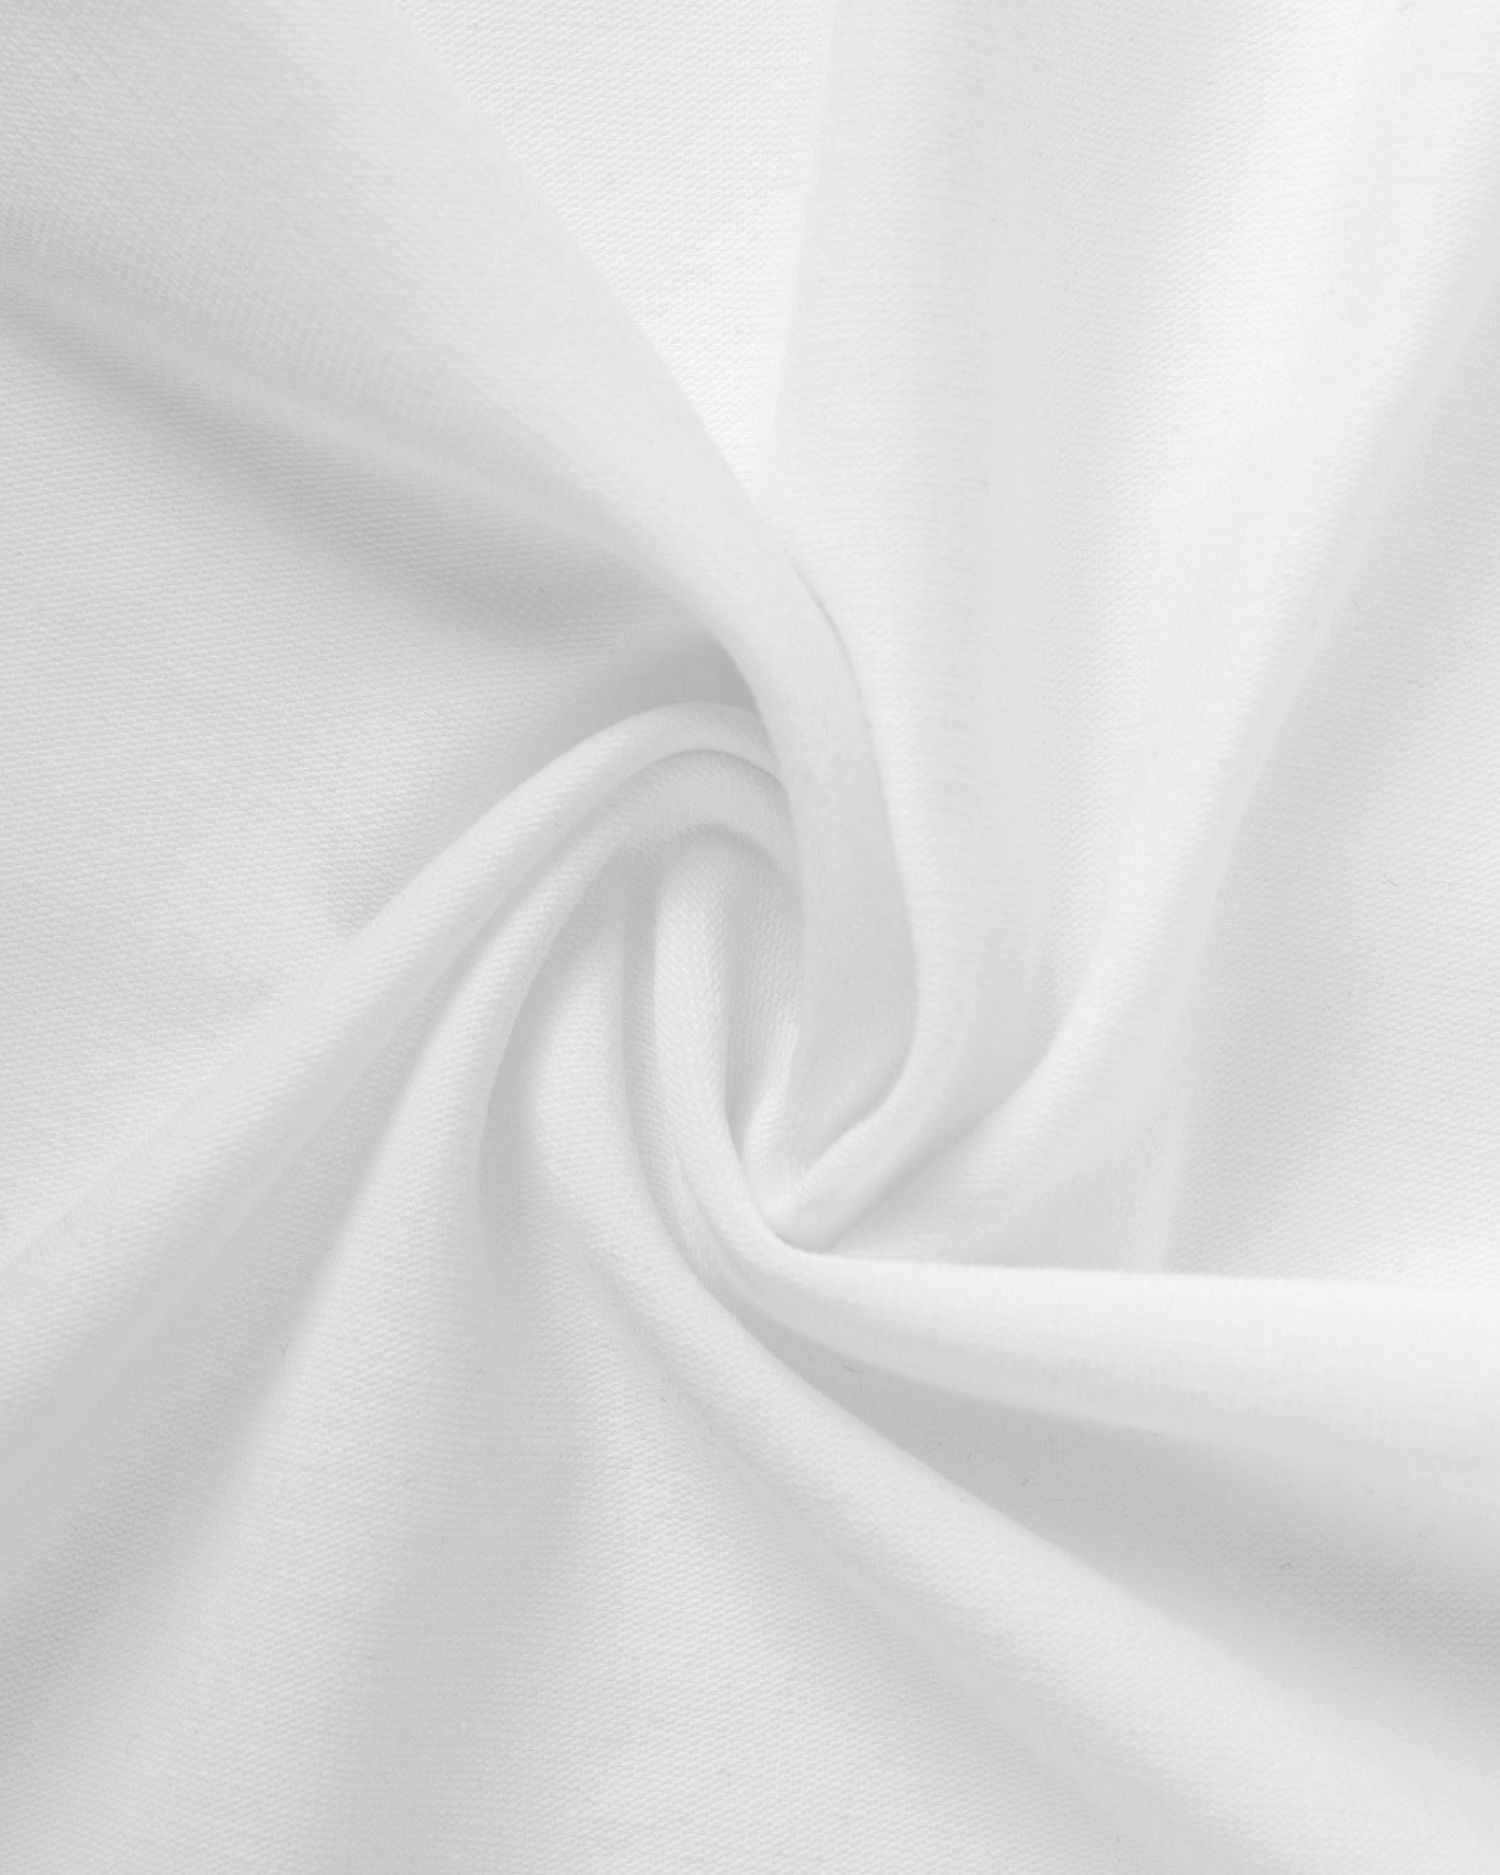 Baumwoll-Jersey mit Elasthan, 1 Meter, 185 g/m2, weiß